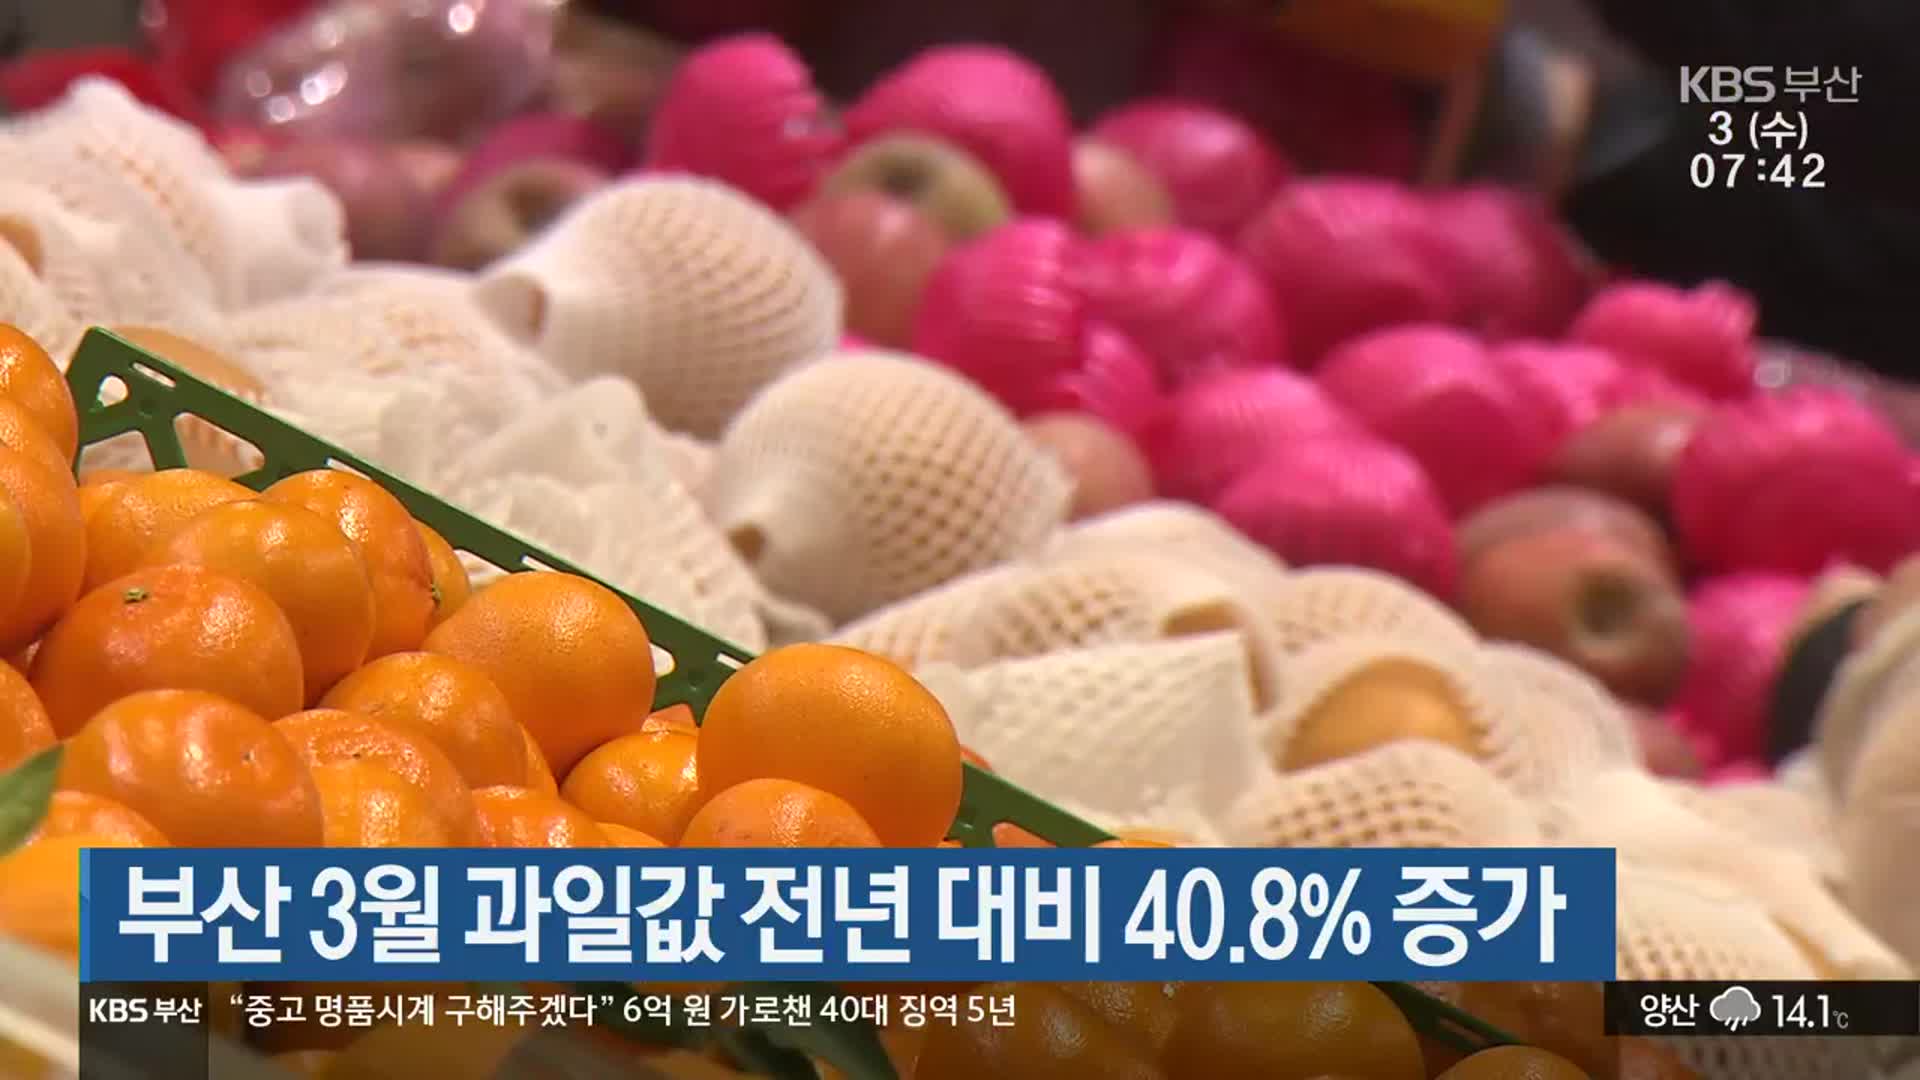 부산 3월 과일값 전년 대비 40.8% 증가